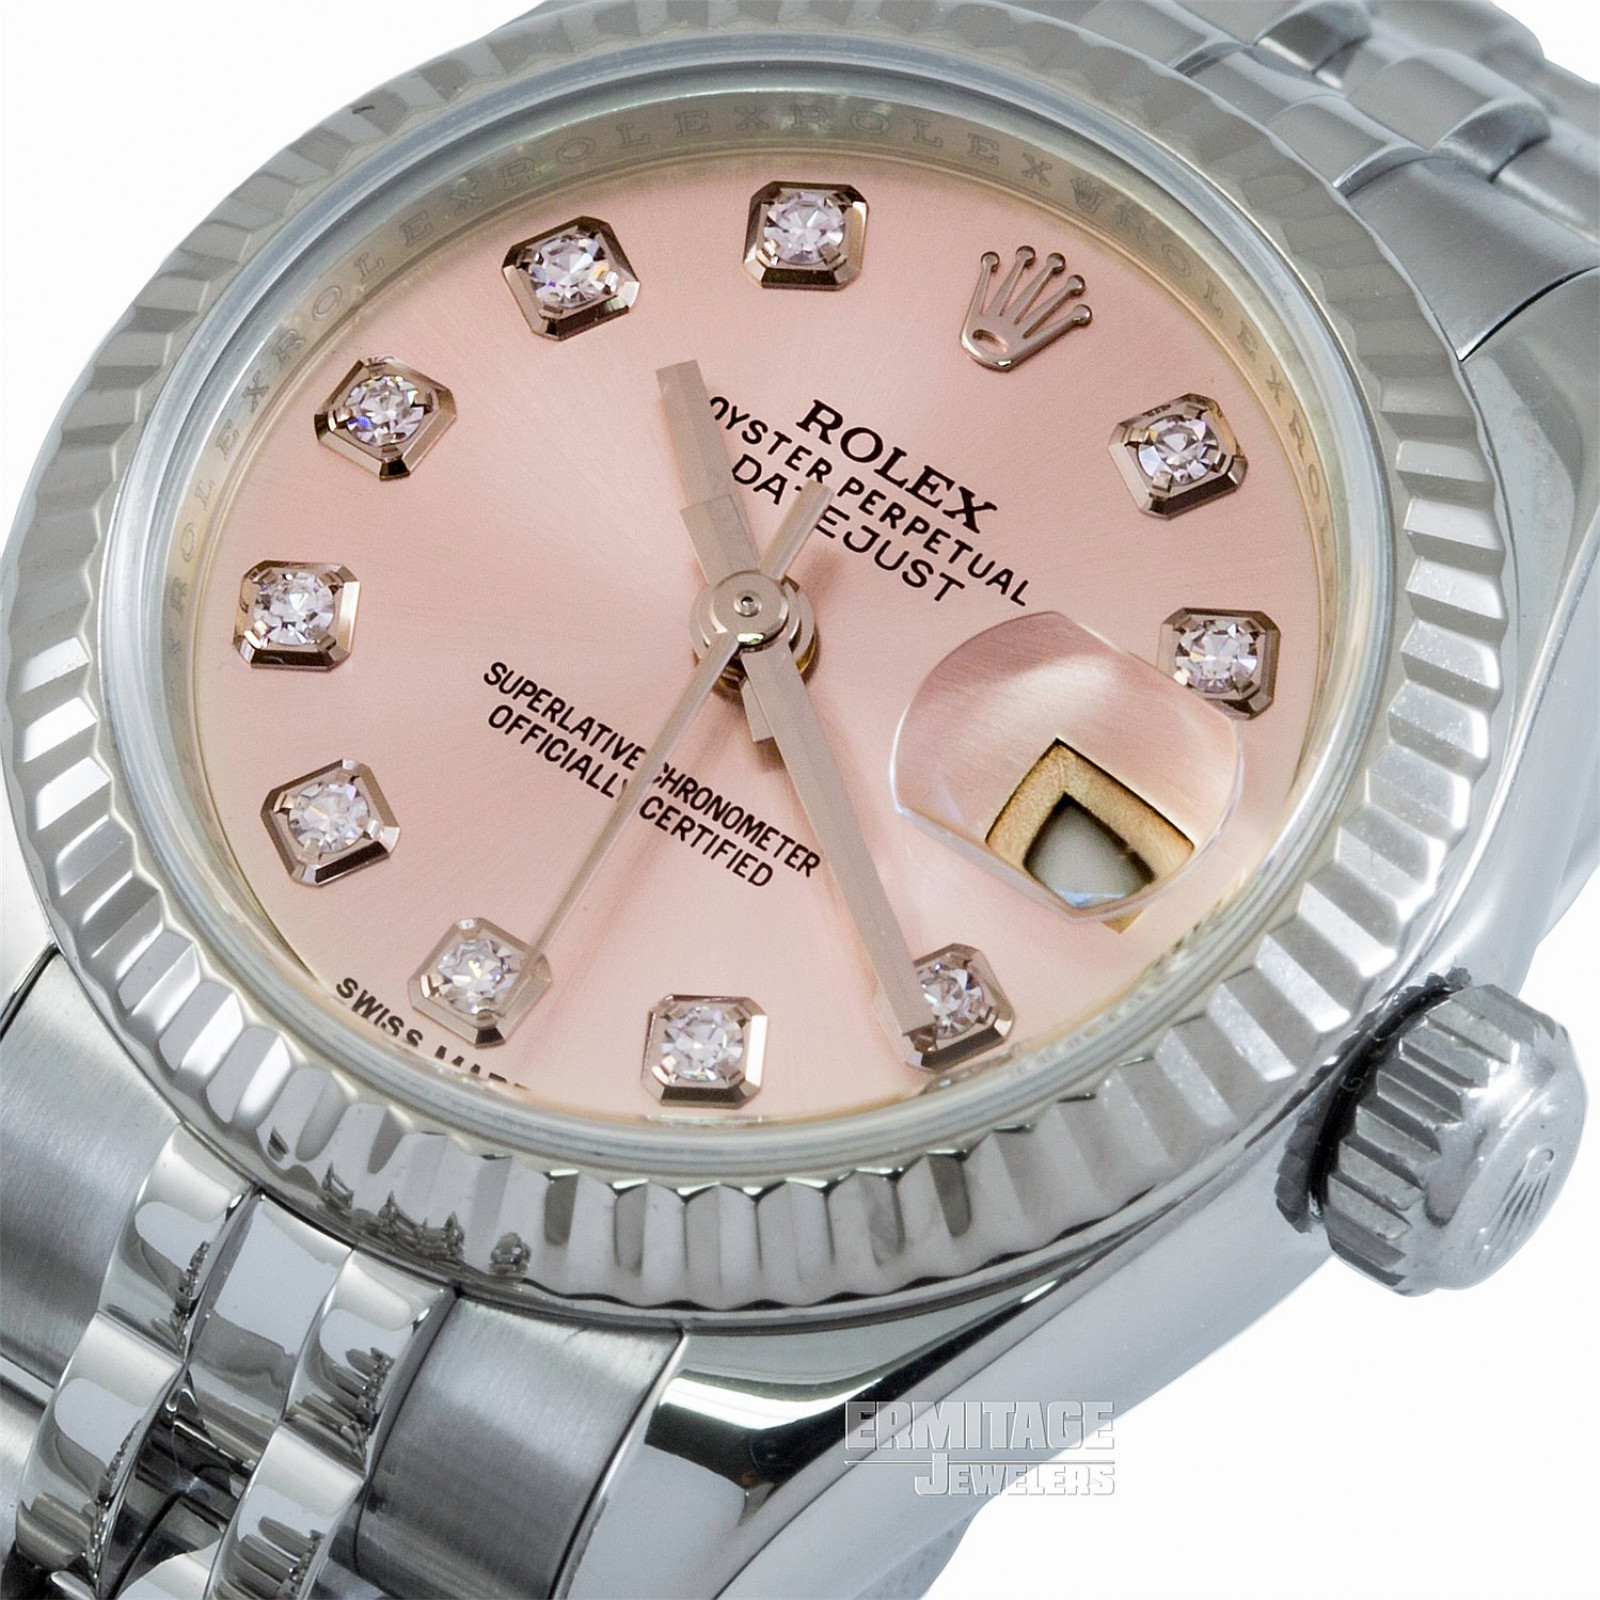 2016 Pink Rolex Datejust Ref. 179174